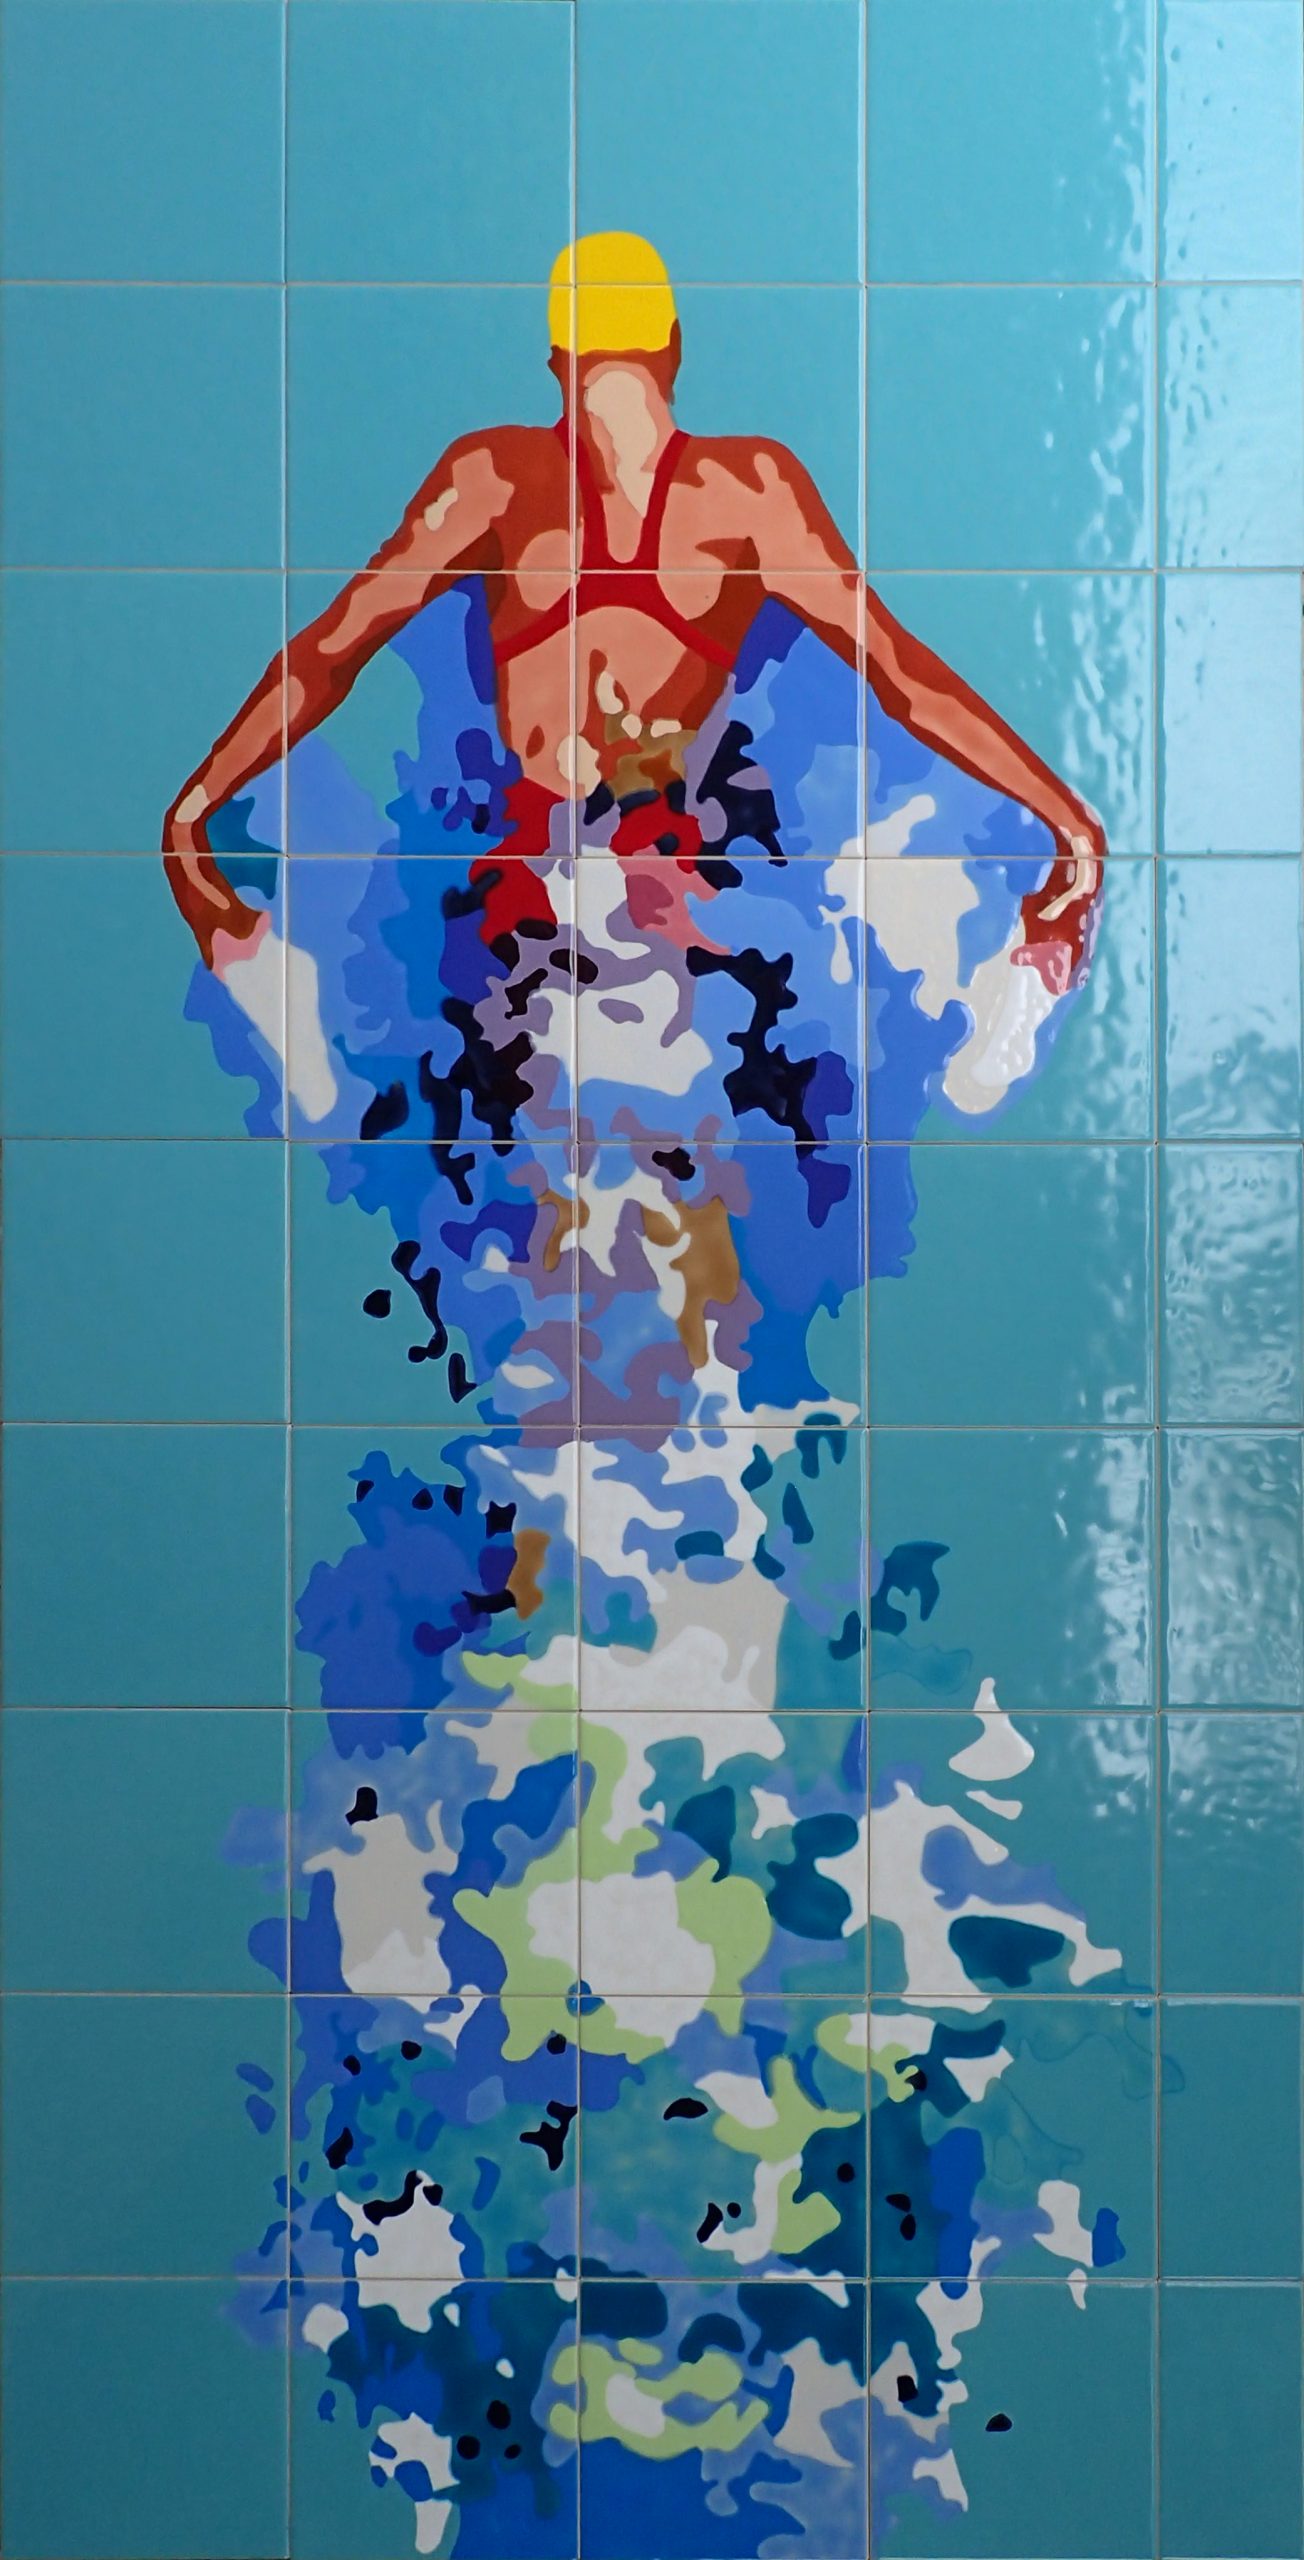 Miami Springs Aquatic Center – Ceramic Tile Murals